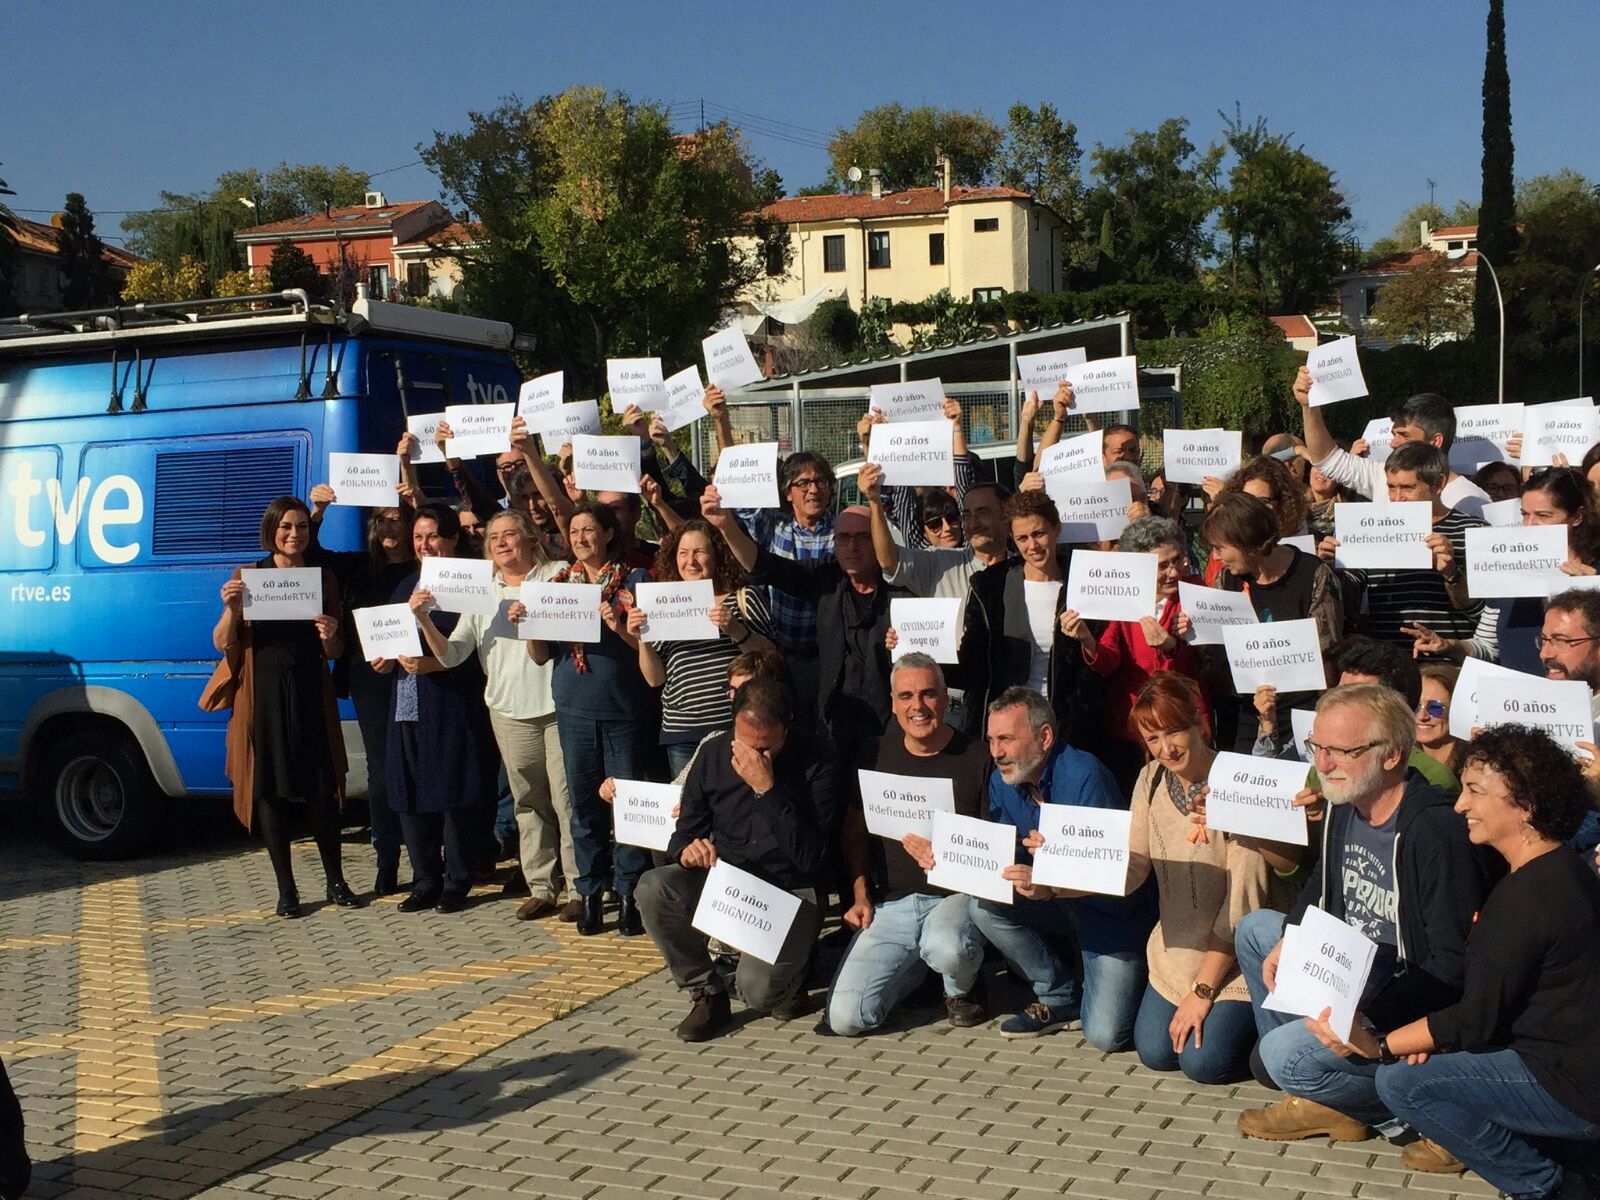 Los trabajadores de RTVE celebran el 60 aniversario de la cadena manifestándose. Consejo de Informativos